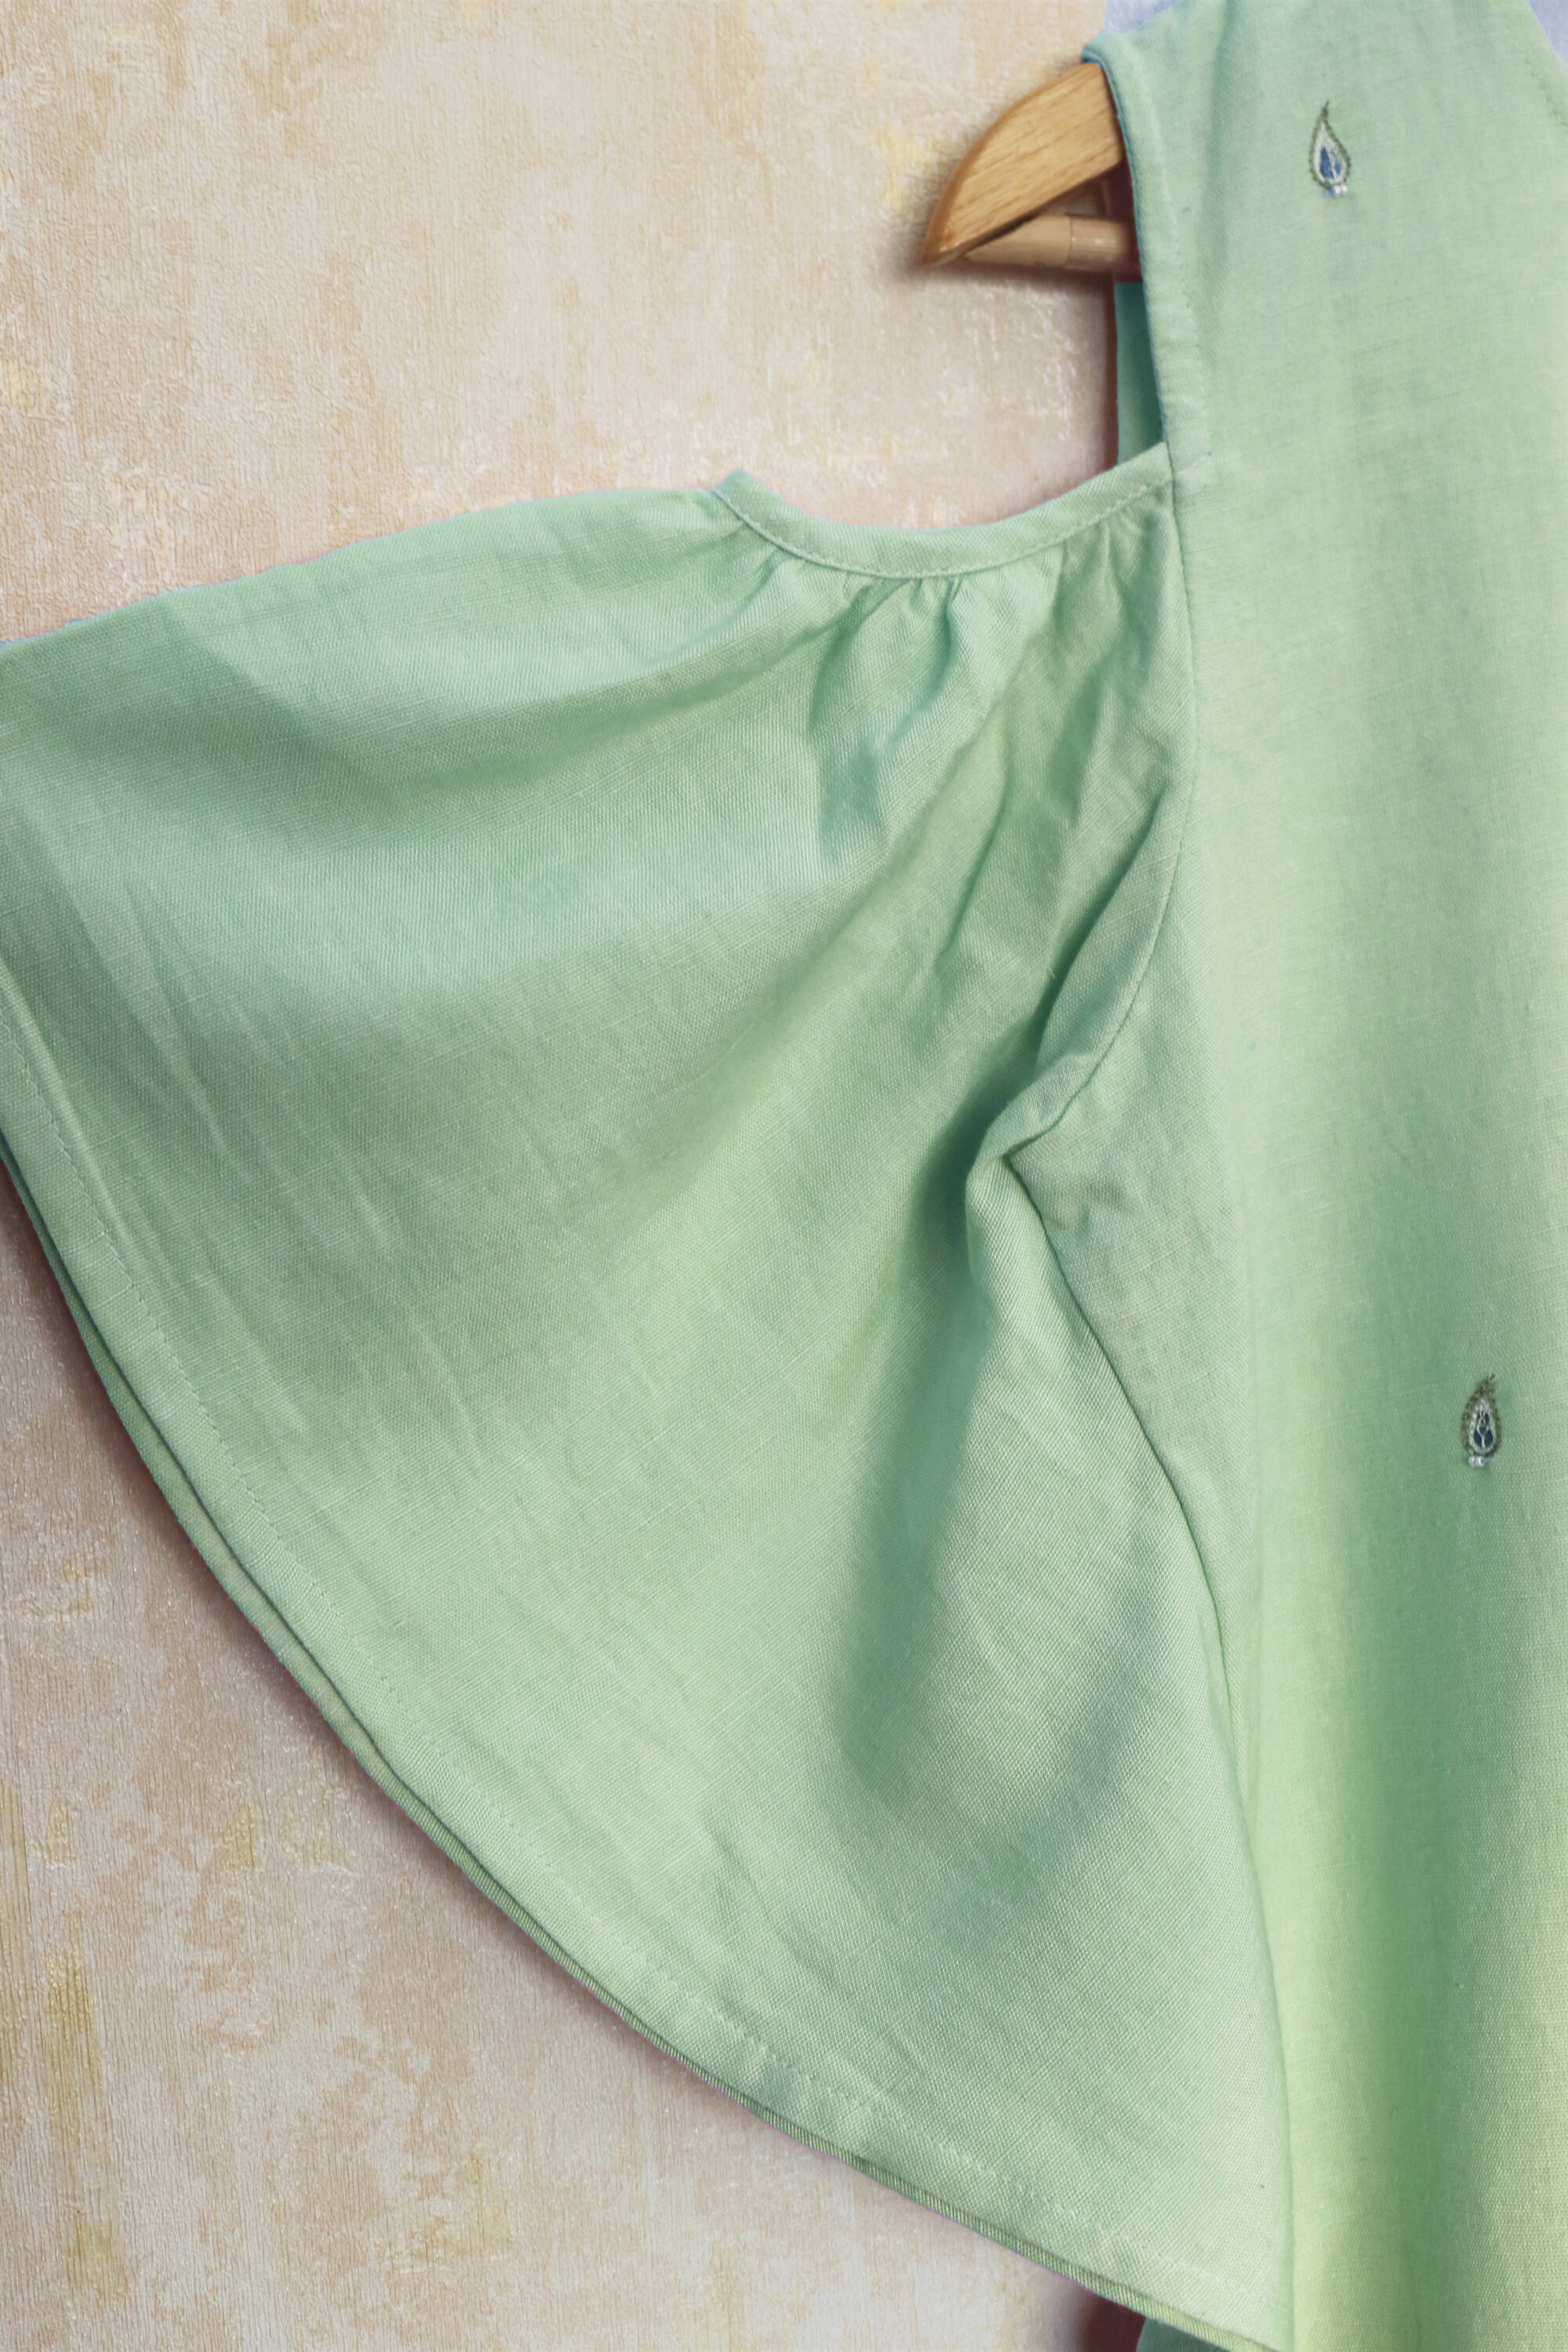 Mint green linen dress Shift dress for women Frill dress | Etsy